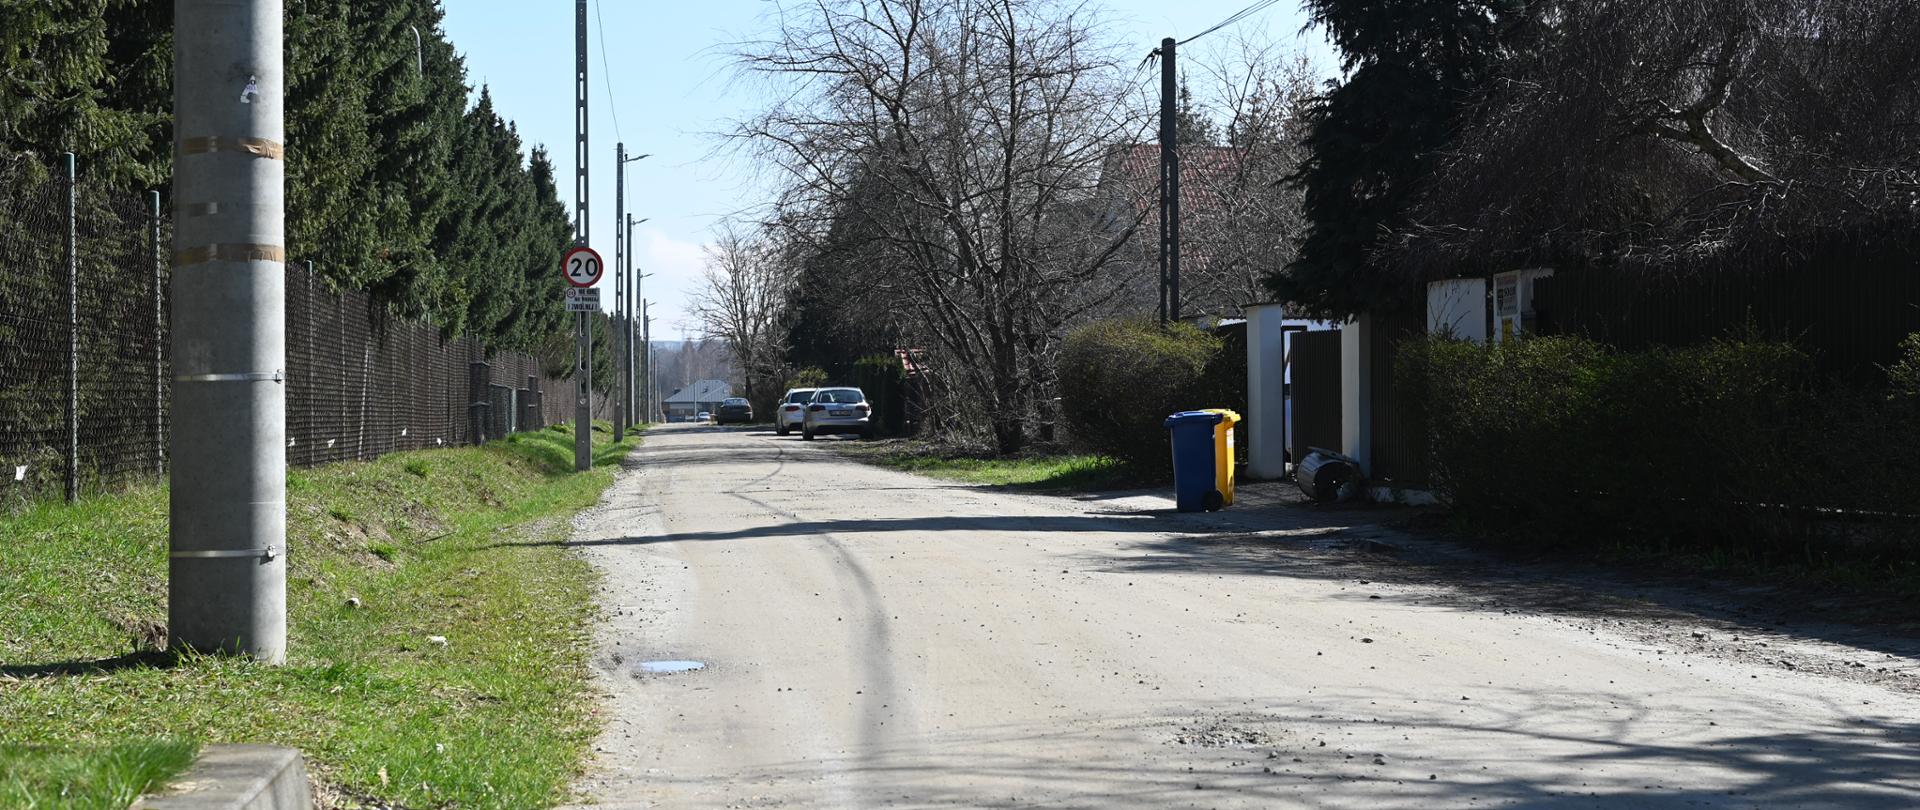 ulica Łanowa, niebieski i żółty kosz na śmieci, w oddali widać zaparkowane dwa samochody, pogoda słoneczna